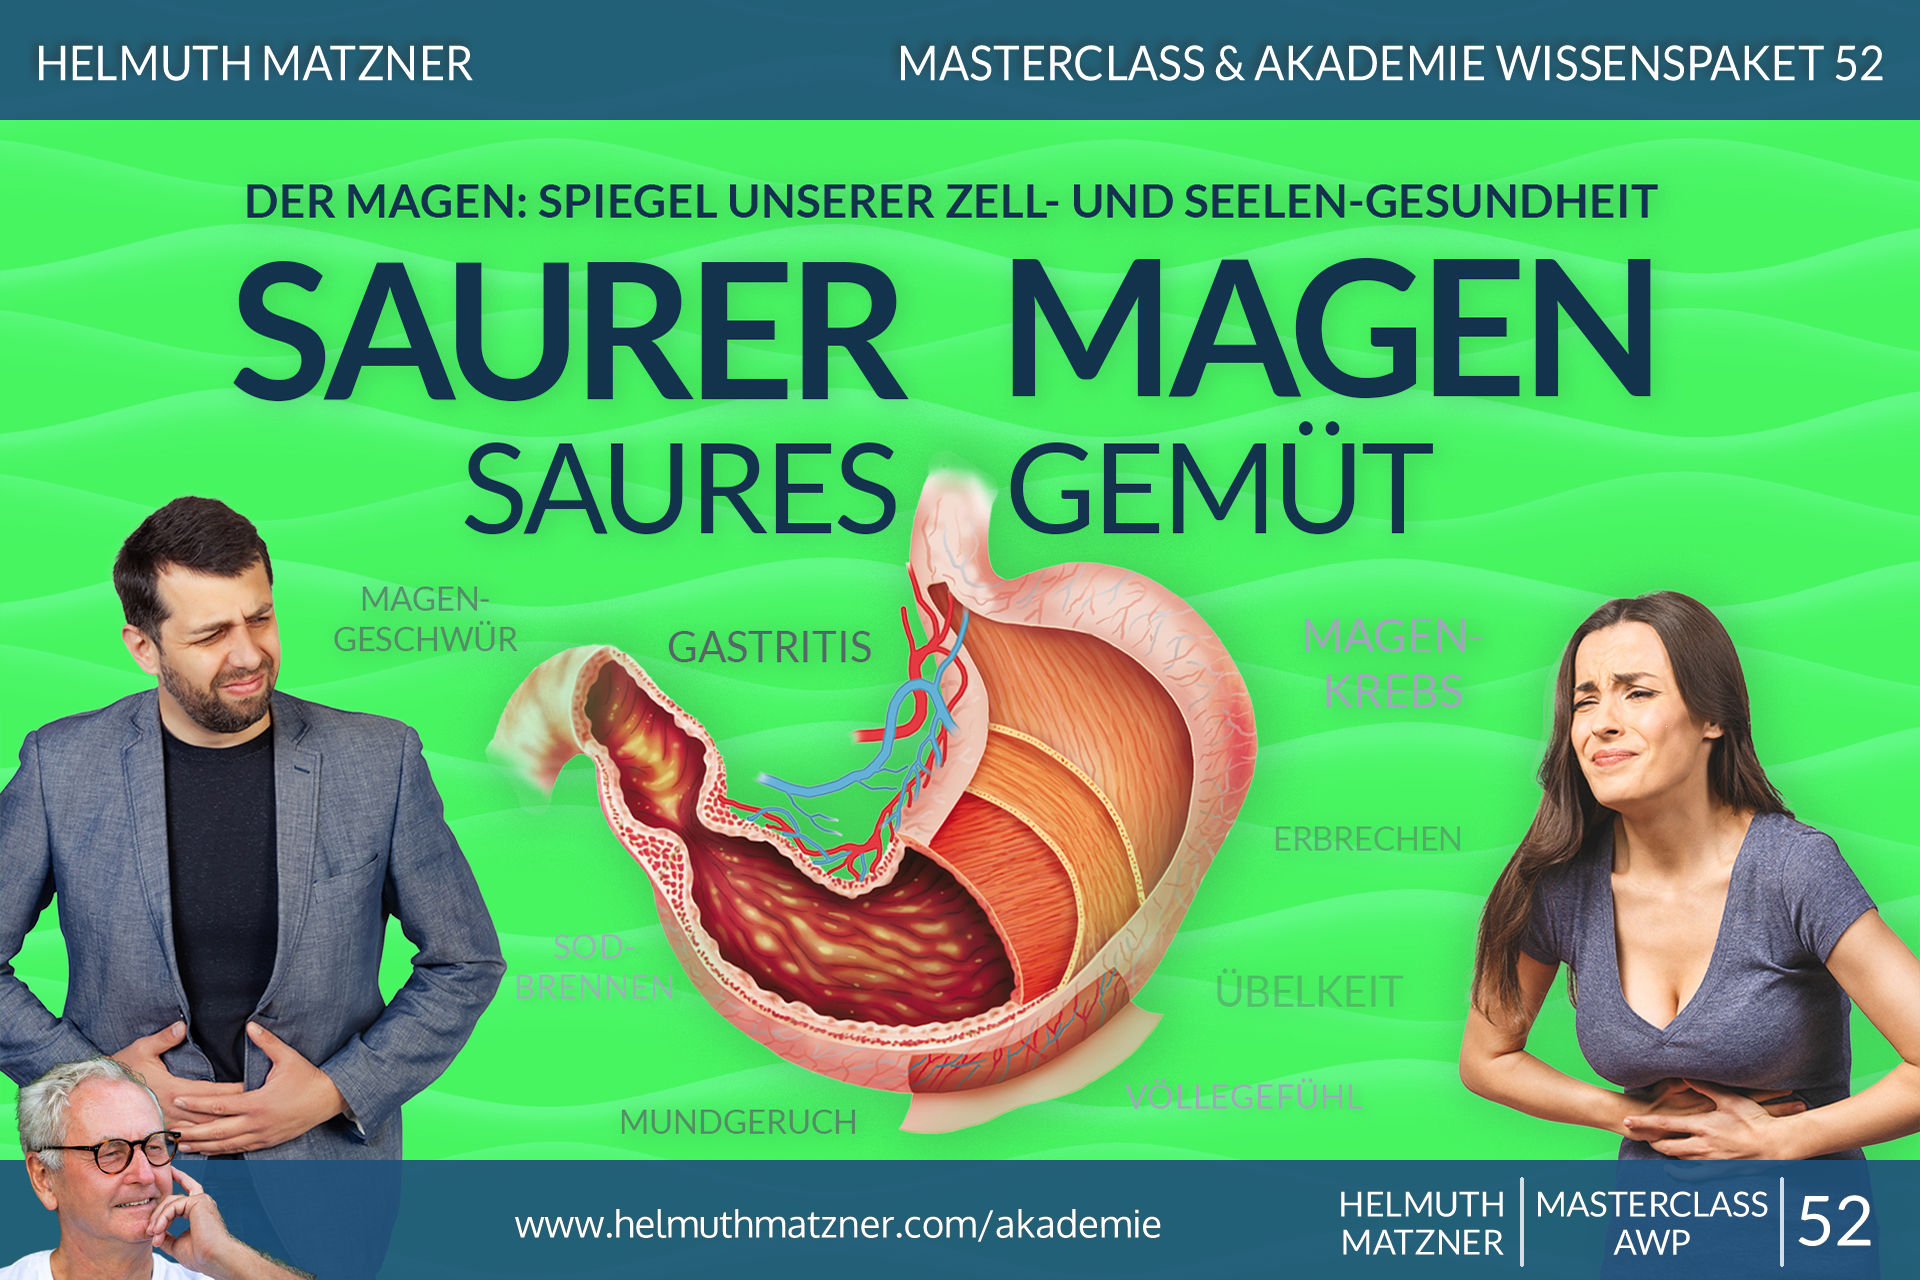 Helmuth Matzner - Masterclass & Akademie Wissenspaket 52 - Magen - AKADEMIE - v01B